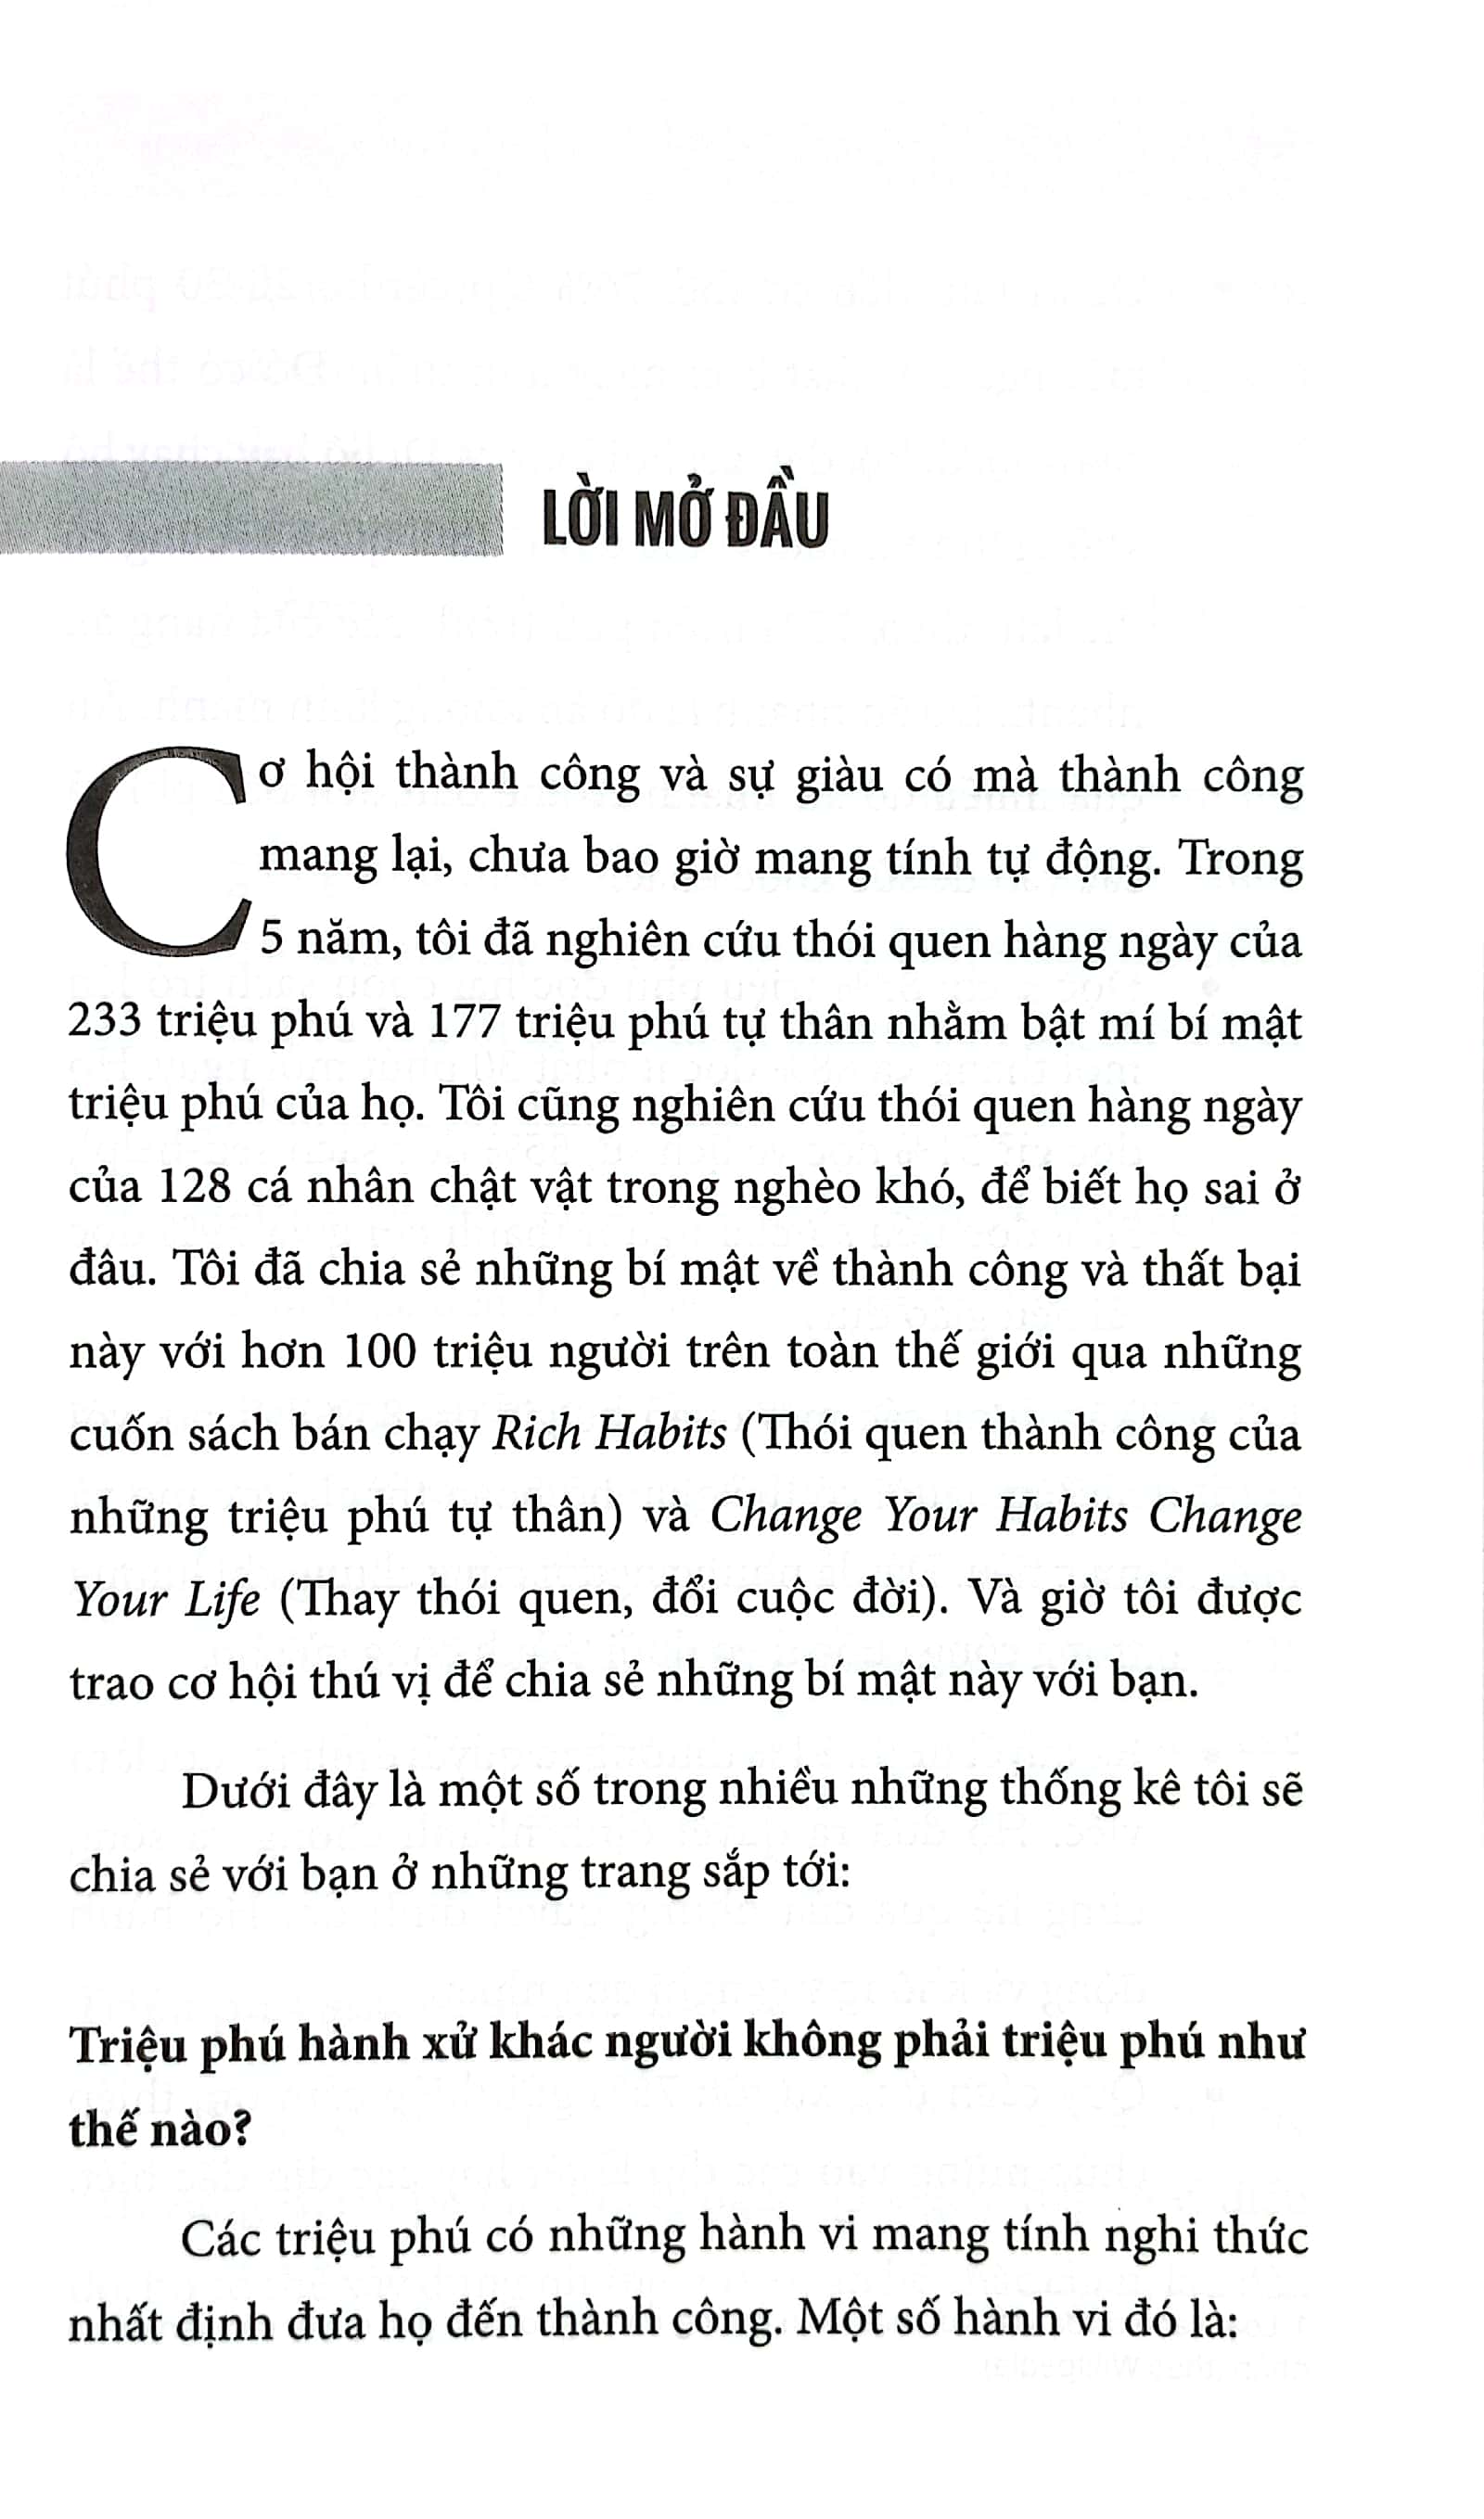 Rich Habits - Thói Quen Thành Công Của Những Triệu Phú Tự Thân PDF